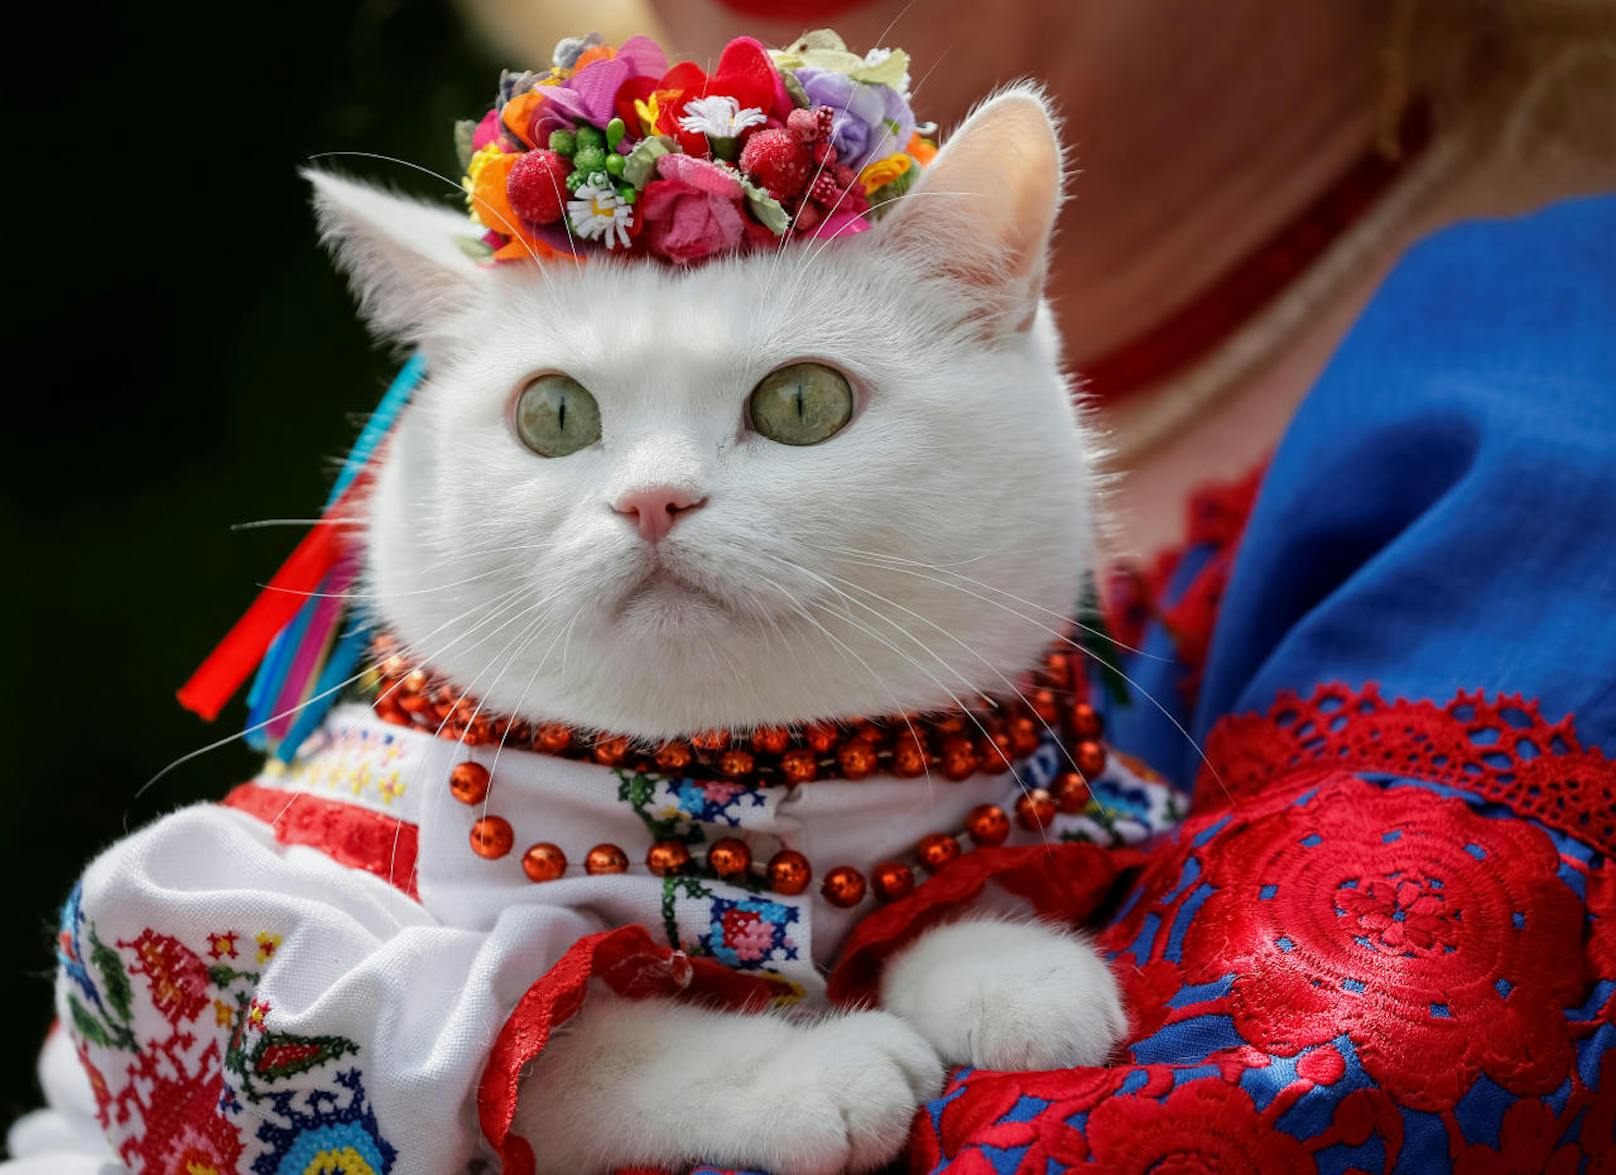 Wer sagt, Trachten sind nur etwas für Menschen. Diese weiße Katze aus der Ukraine beweist das Gegenteil.